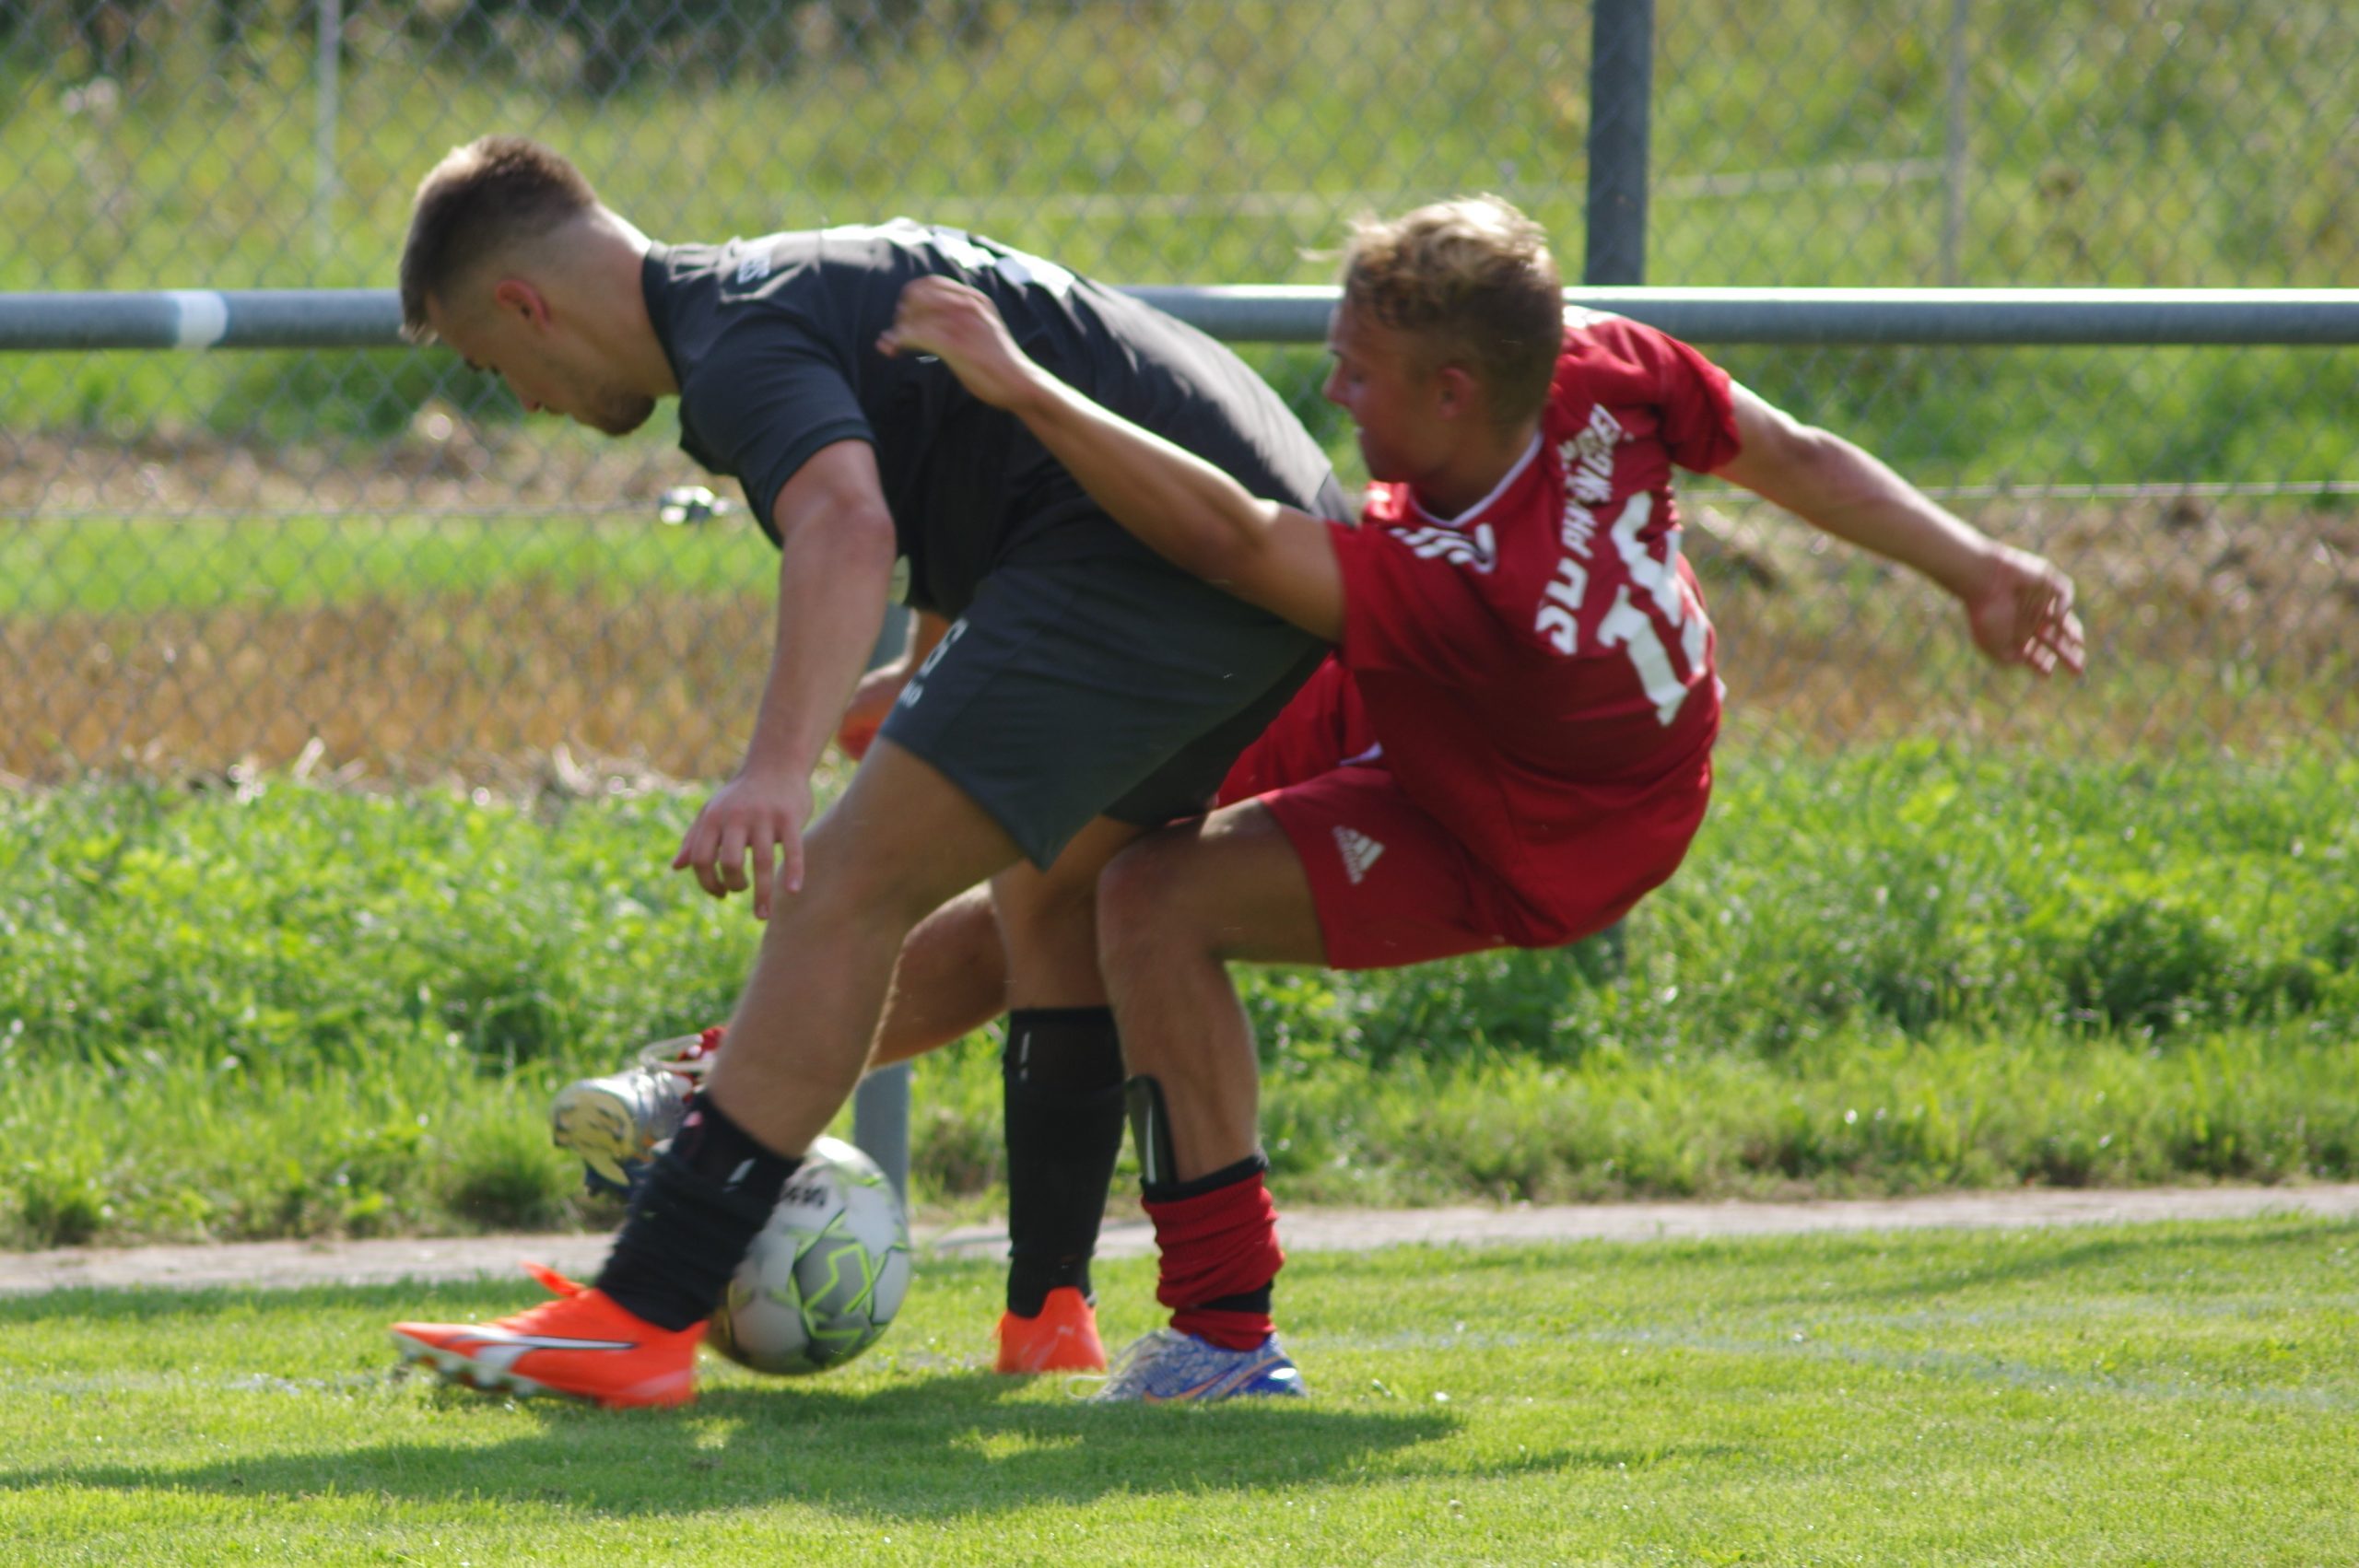 Spielbericht Kreisliga A3 – 1. Spieltag: Torloses Remis zum Saisonauftakt unserer 1. Mannschaft